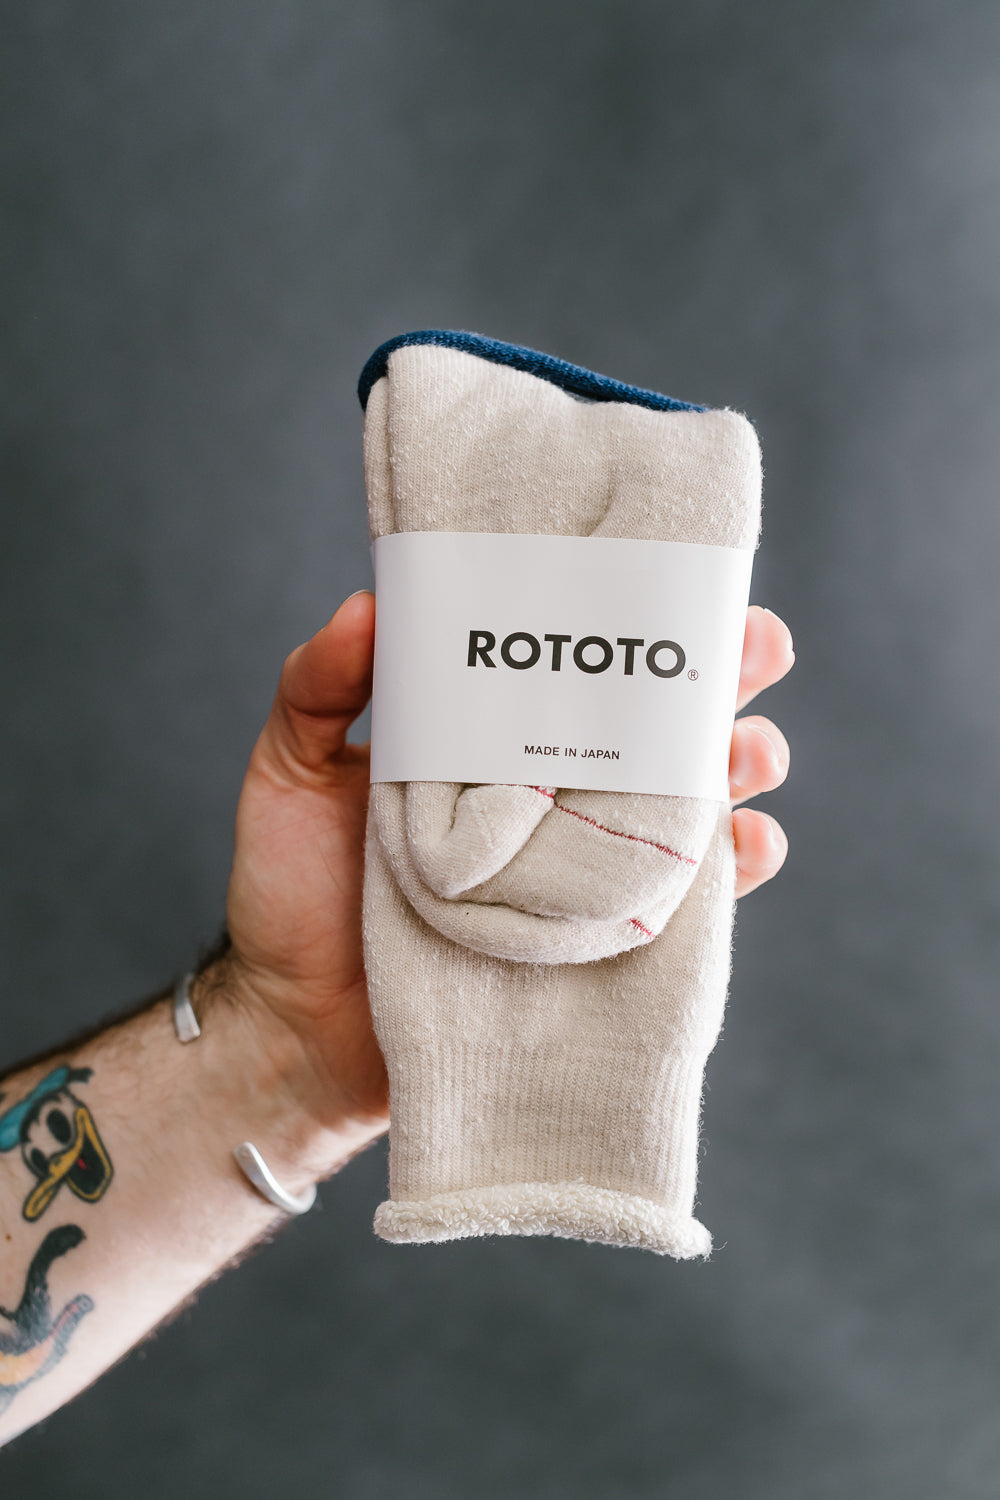 R1001 - Double Face Crew Socks Merino Wool OG - Oatmeal